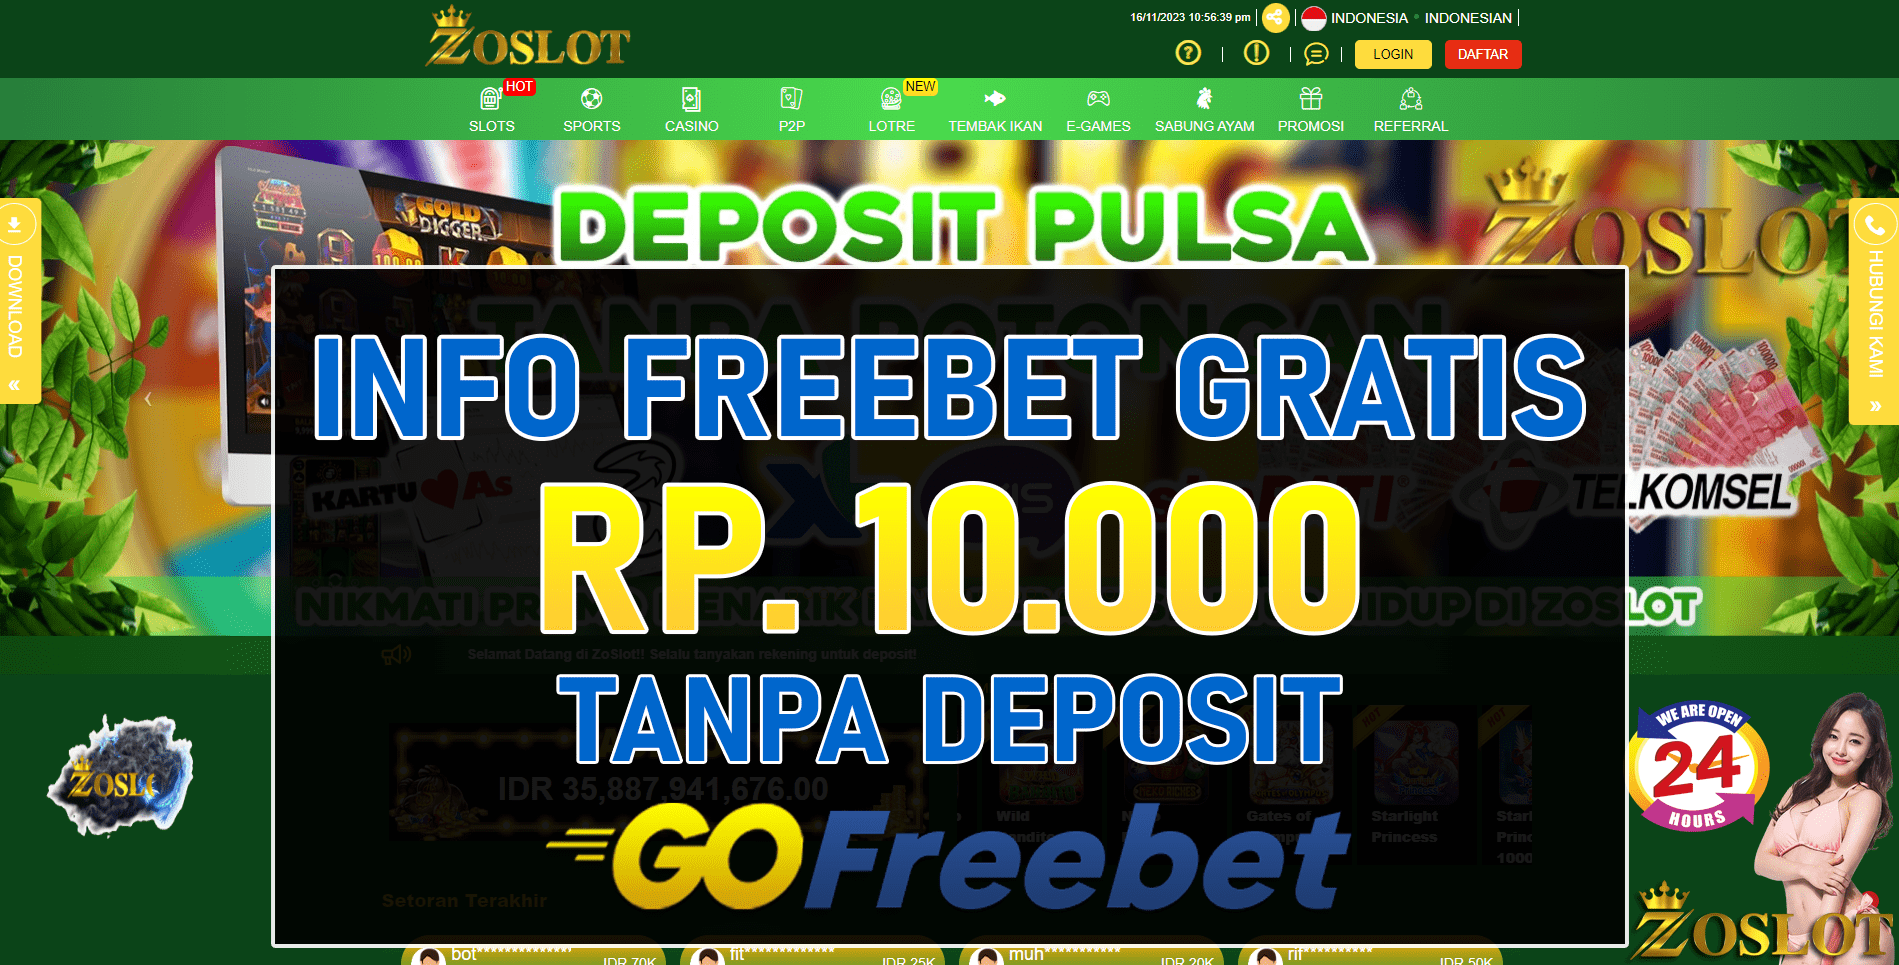 ZoSlot Freebet Gratis Rp 10.000 Tanpa Deposit